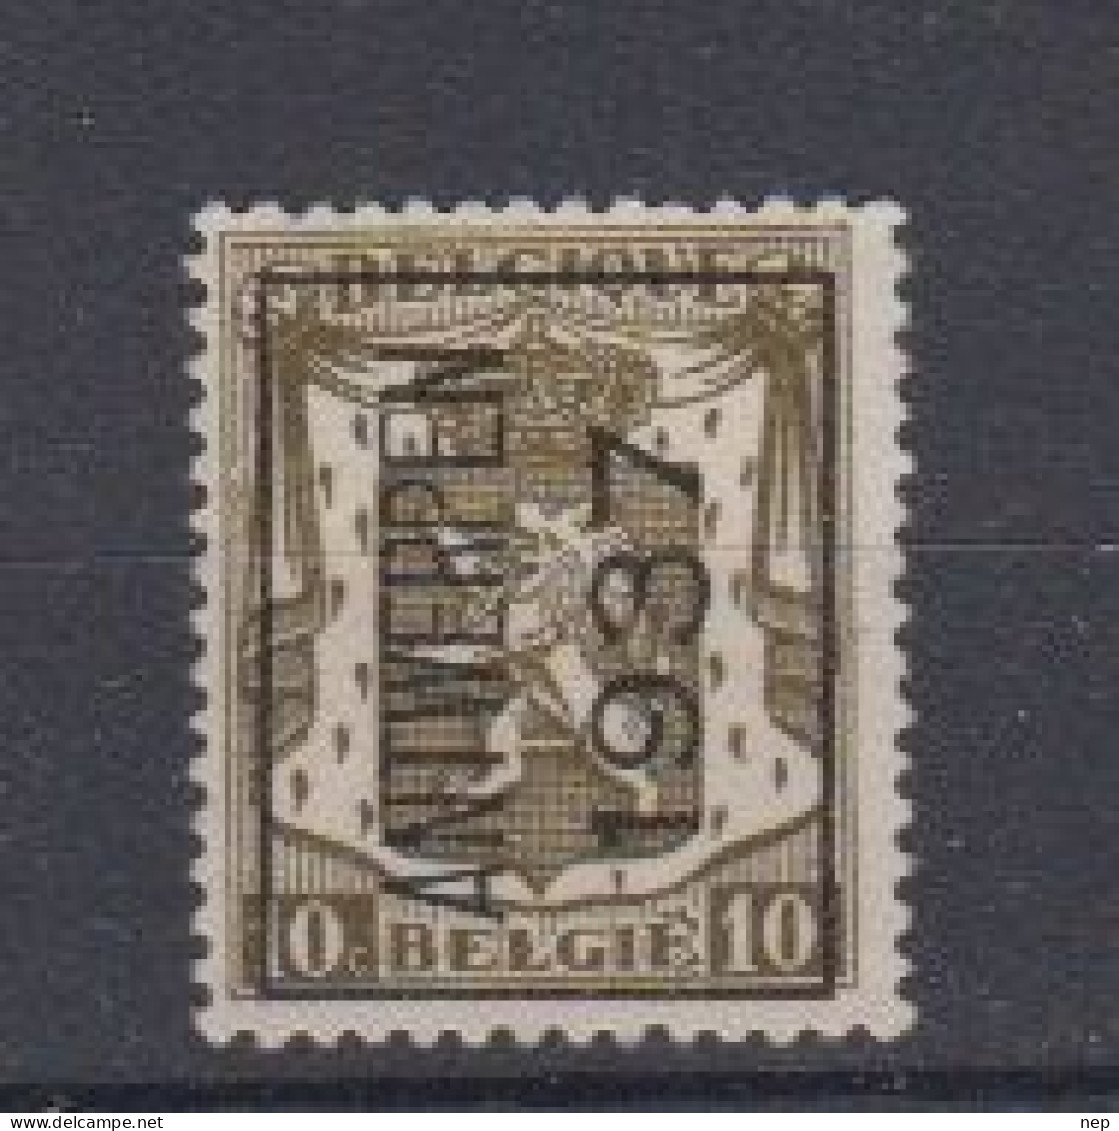 BELGIË - PREO - 1937 - Nr 327 A - ANTWERPEN 1937 - (*) - Typos 1936-51 (Kleines Siegel)